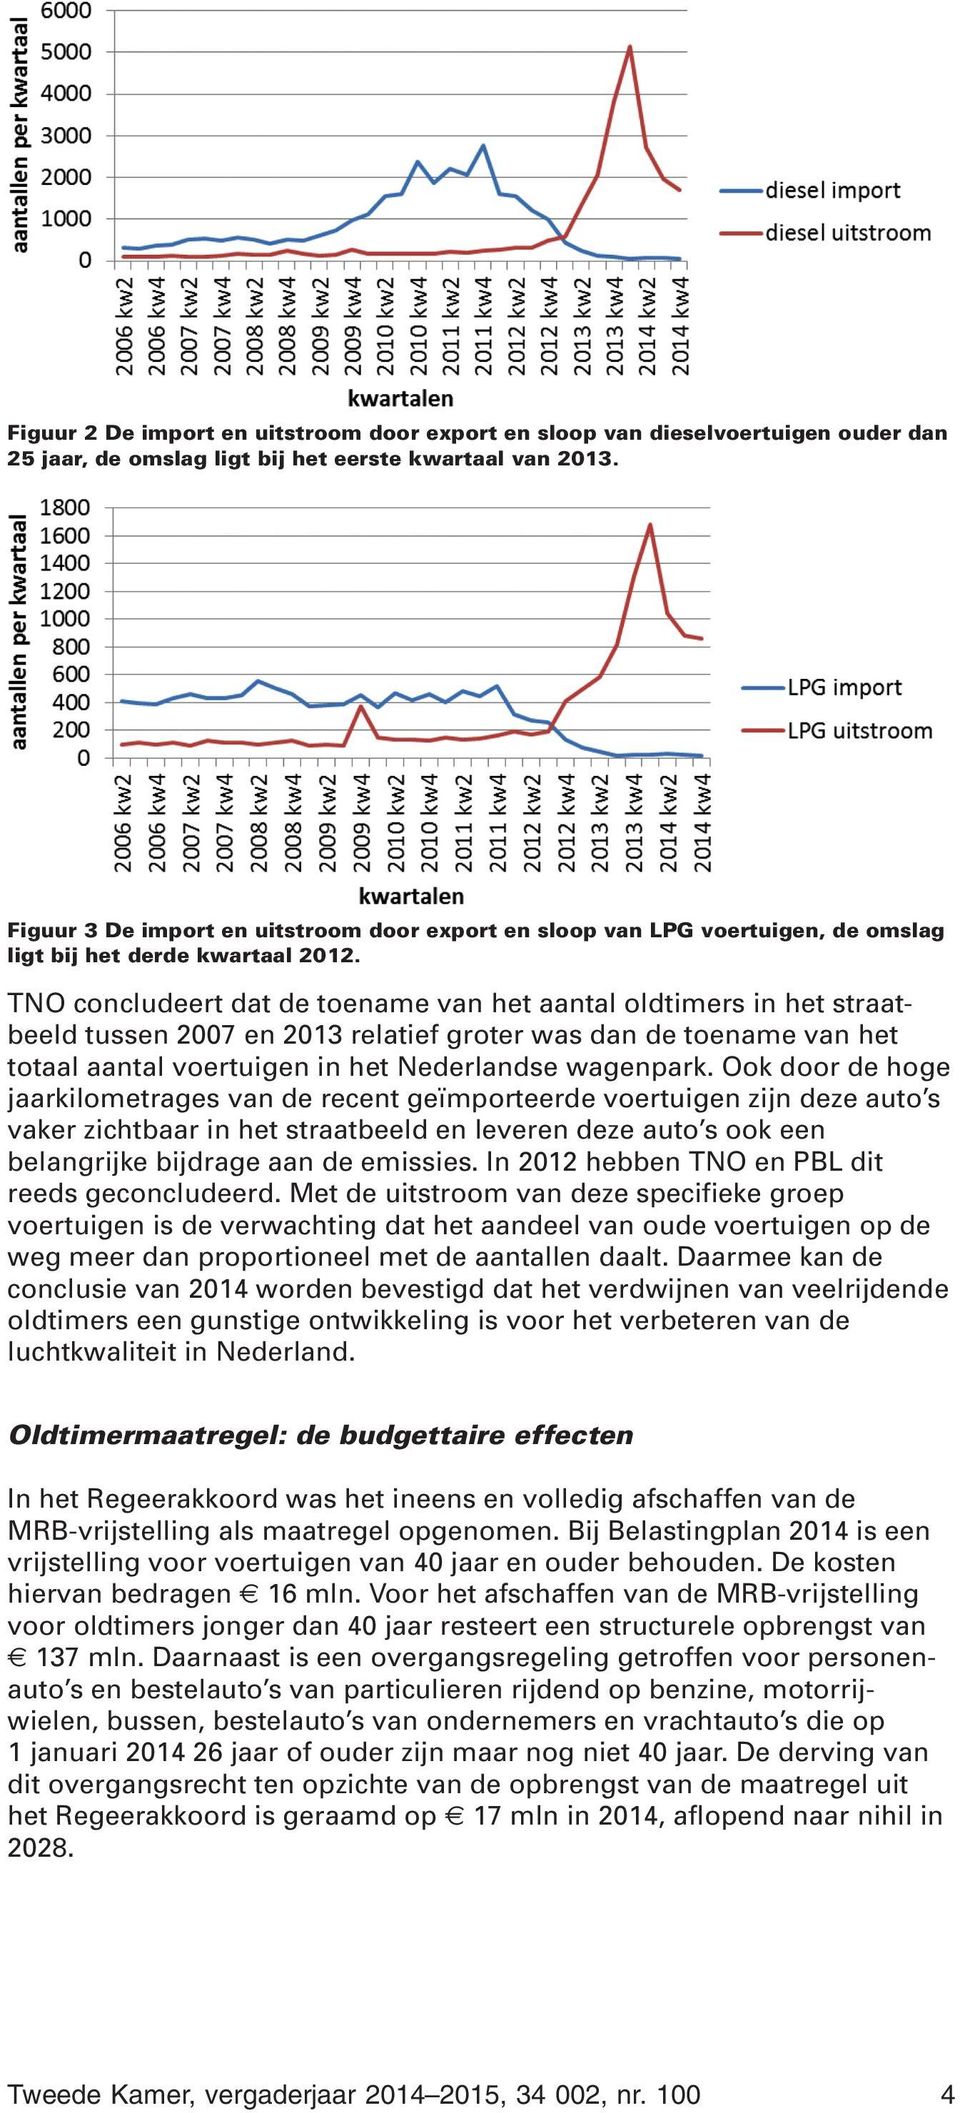 TNO concludeert dat de toename van het aantal oldtimers in het straatbeeld tussen 2007 en 2013 relatief groter was dan de toename van het totaal aantal voertuigen in het Nederlandse wagenpark.